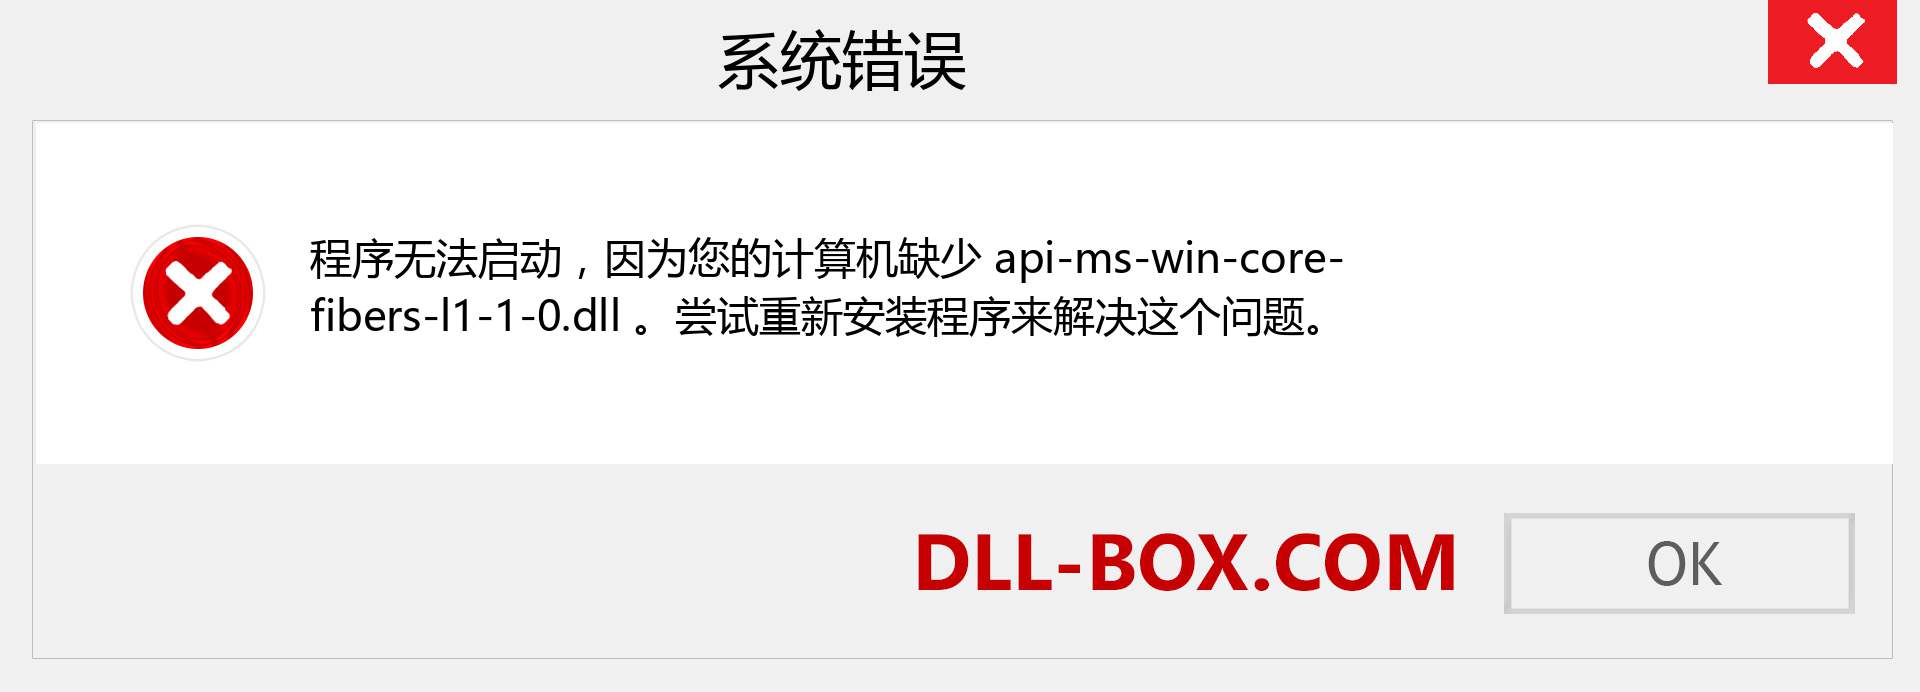 api-ms-win-core-fibers-l1-1-0.dll 文件丢失？。 适用于 Windows 7、8、10 的下载 - 修复 Windows、照片、图像上的 api-ms-win-core-fibers-l1-1-0 dll 丢失错误